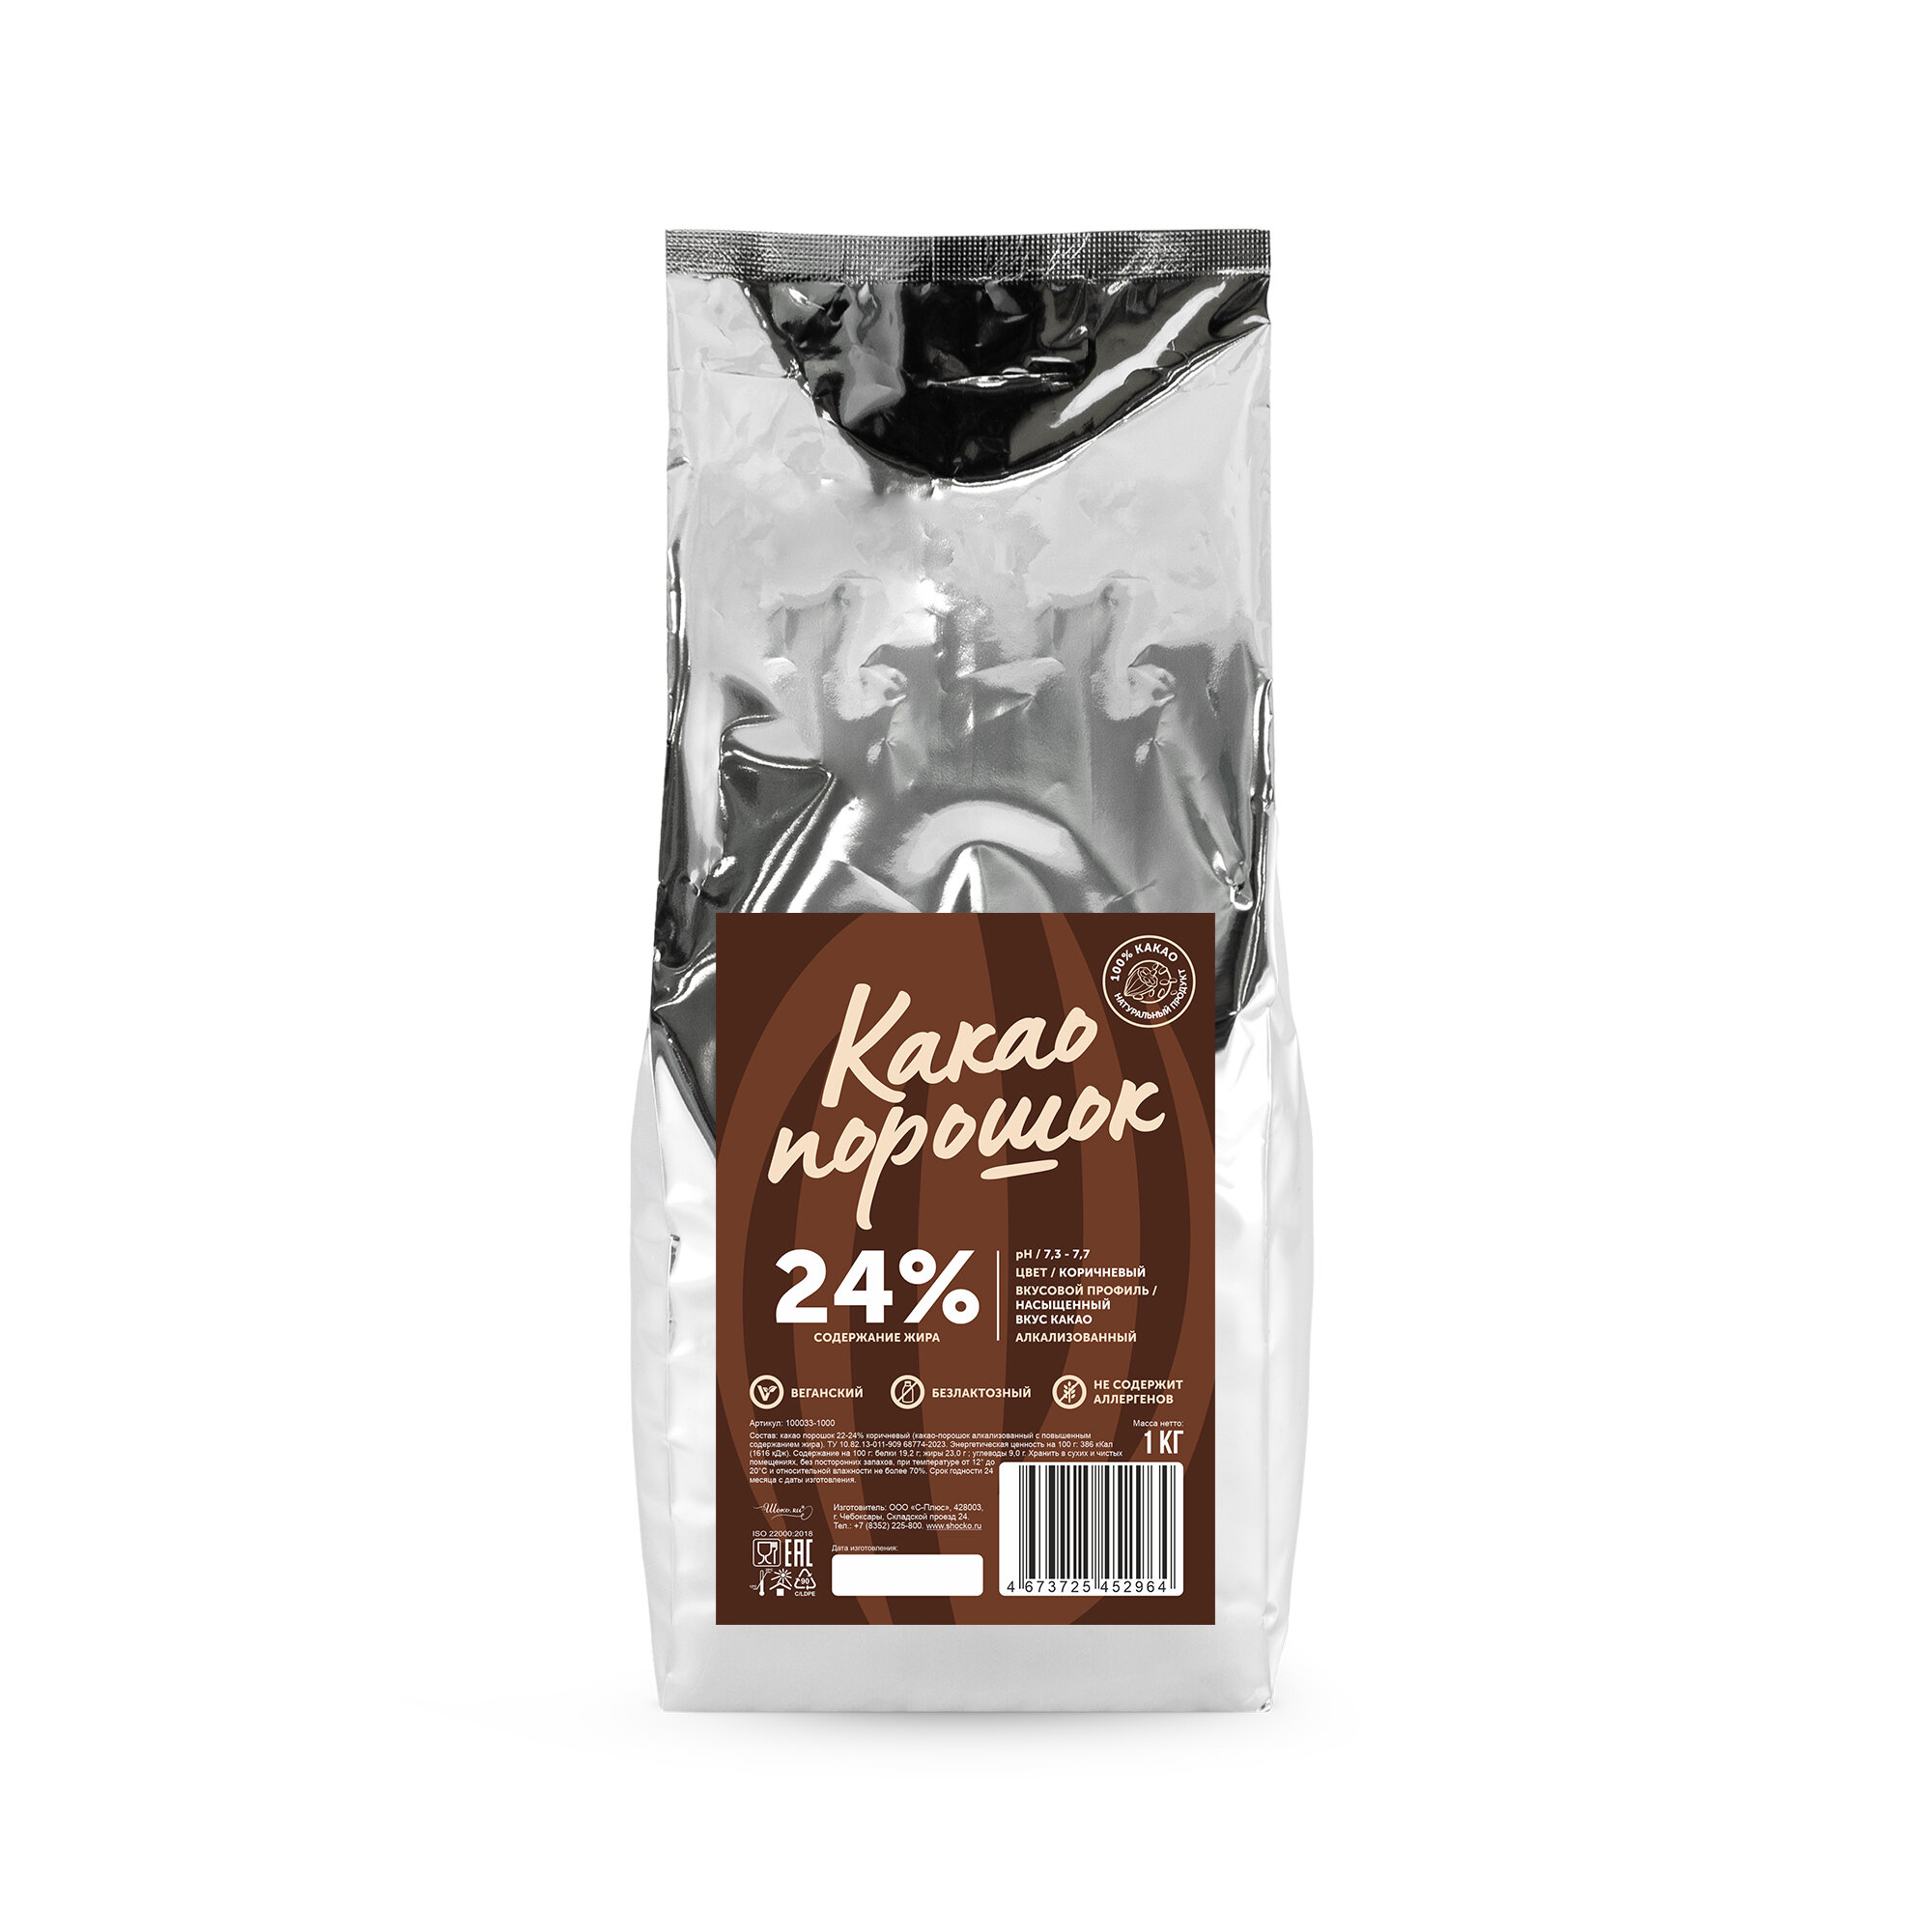 Алкализованный какао порошок 22-24% коричневый Bensdorp 1 кг